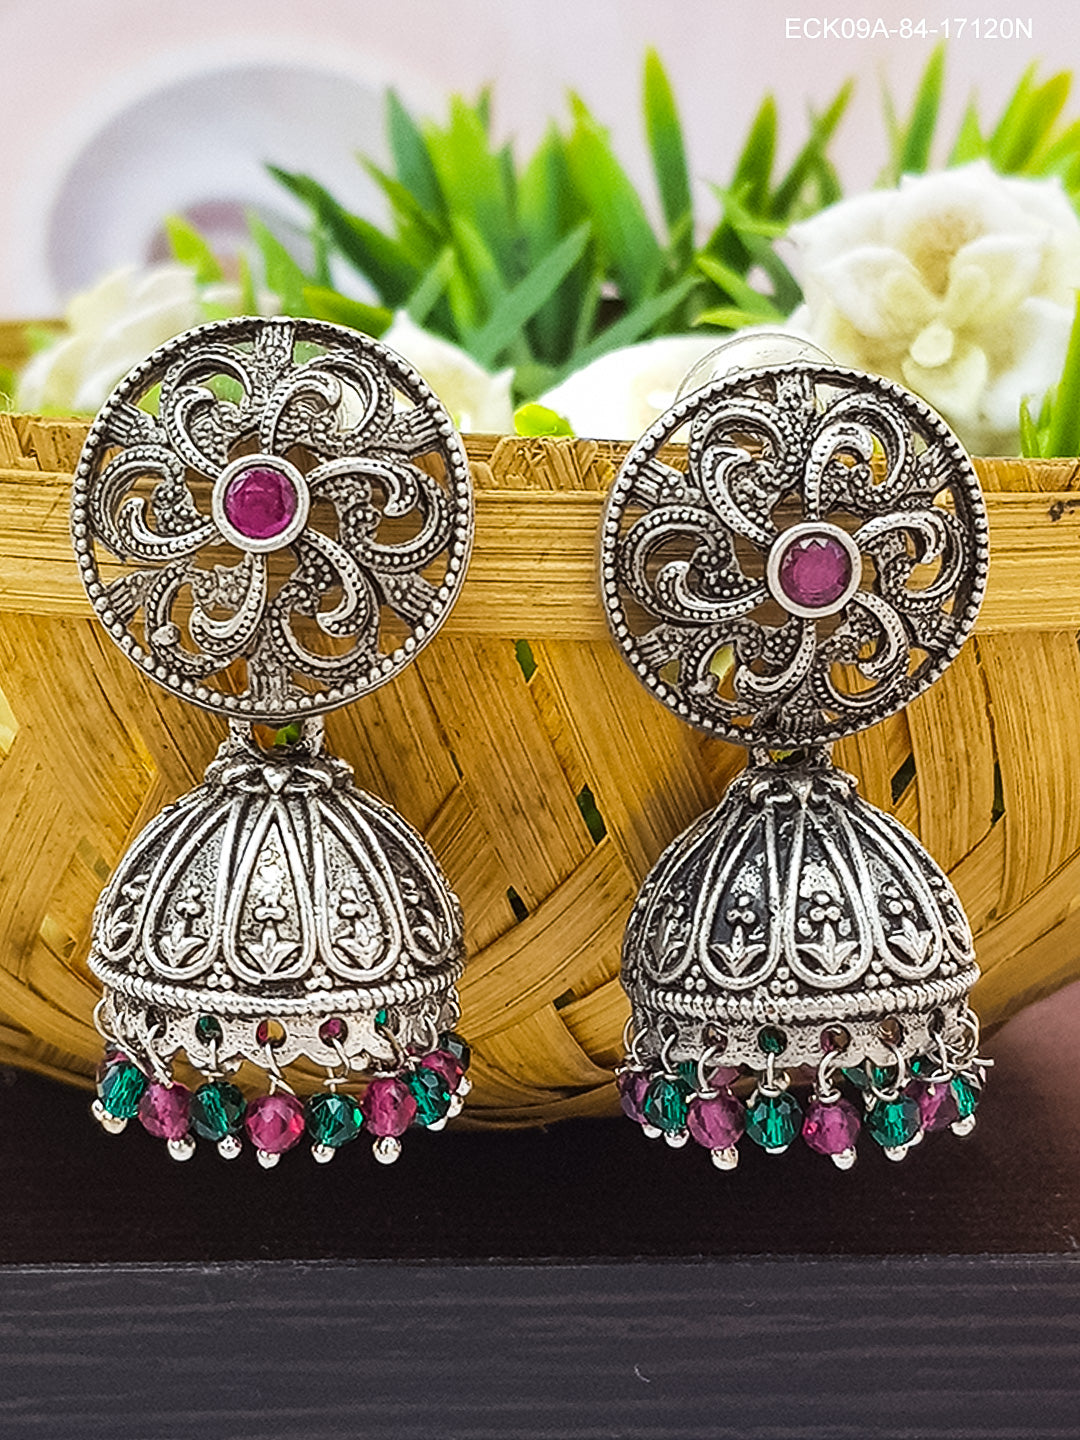 Silver Plated Oxidised Jhumki /Earrings 17120N